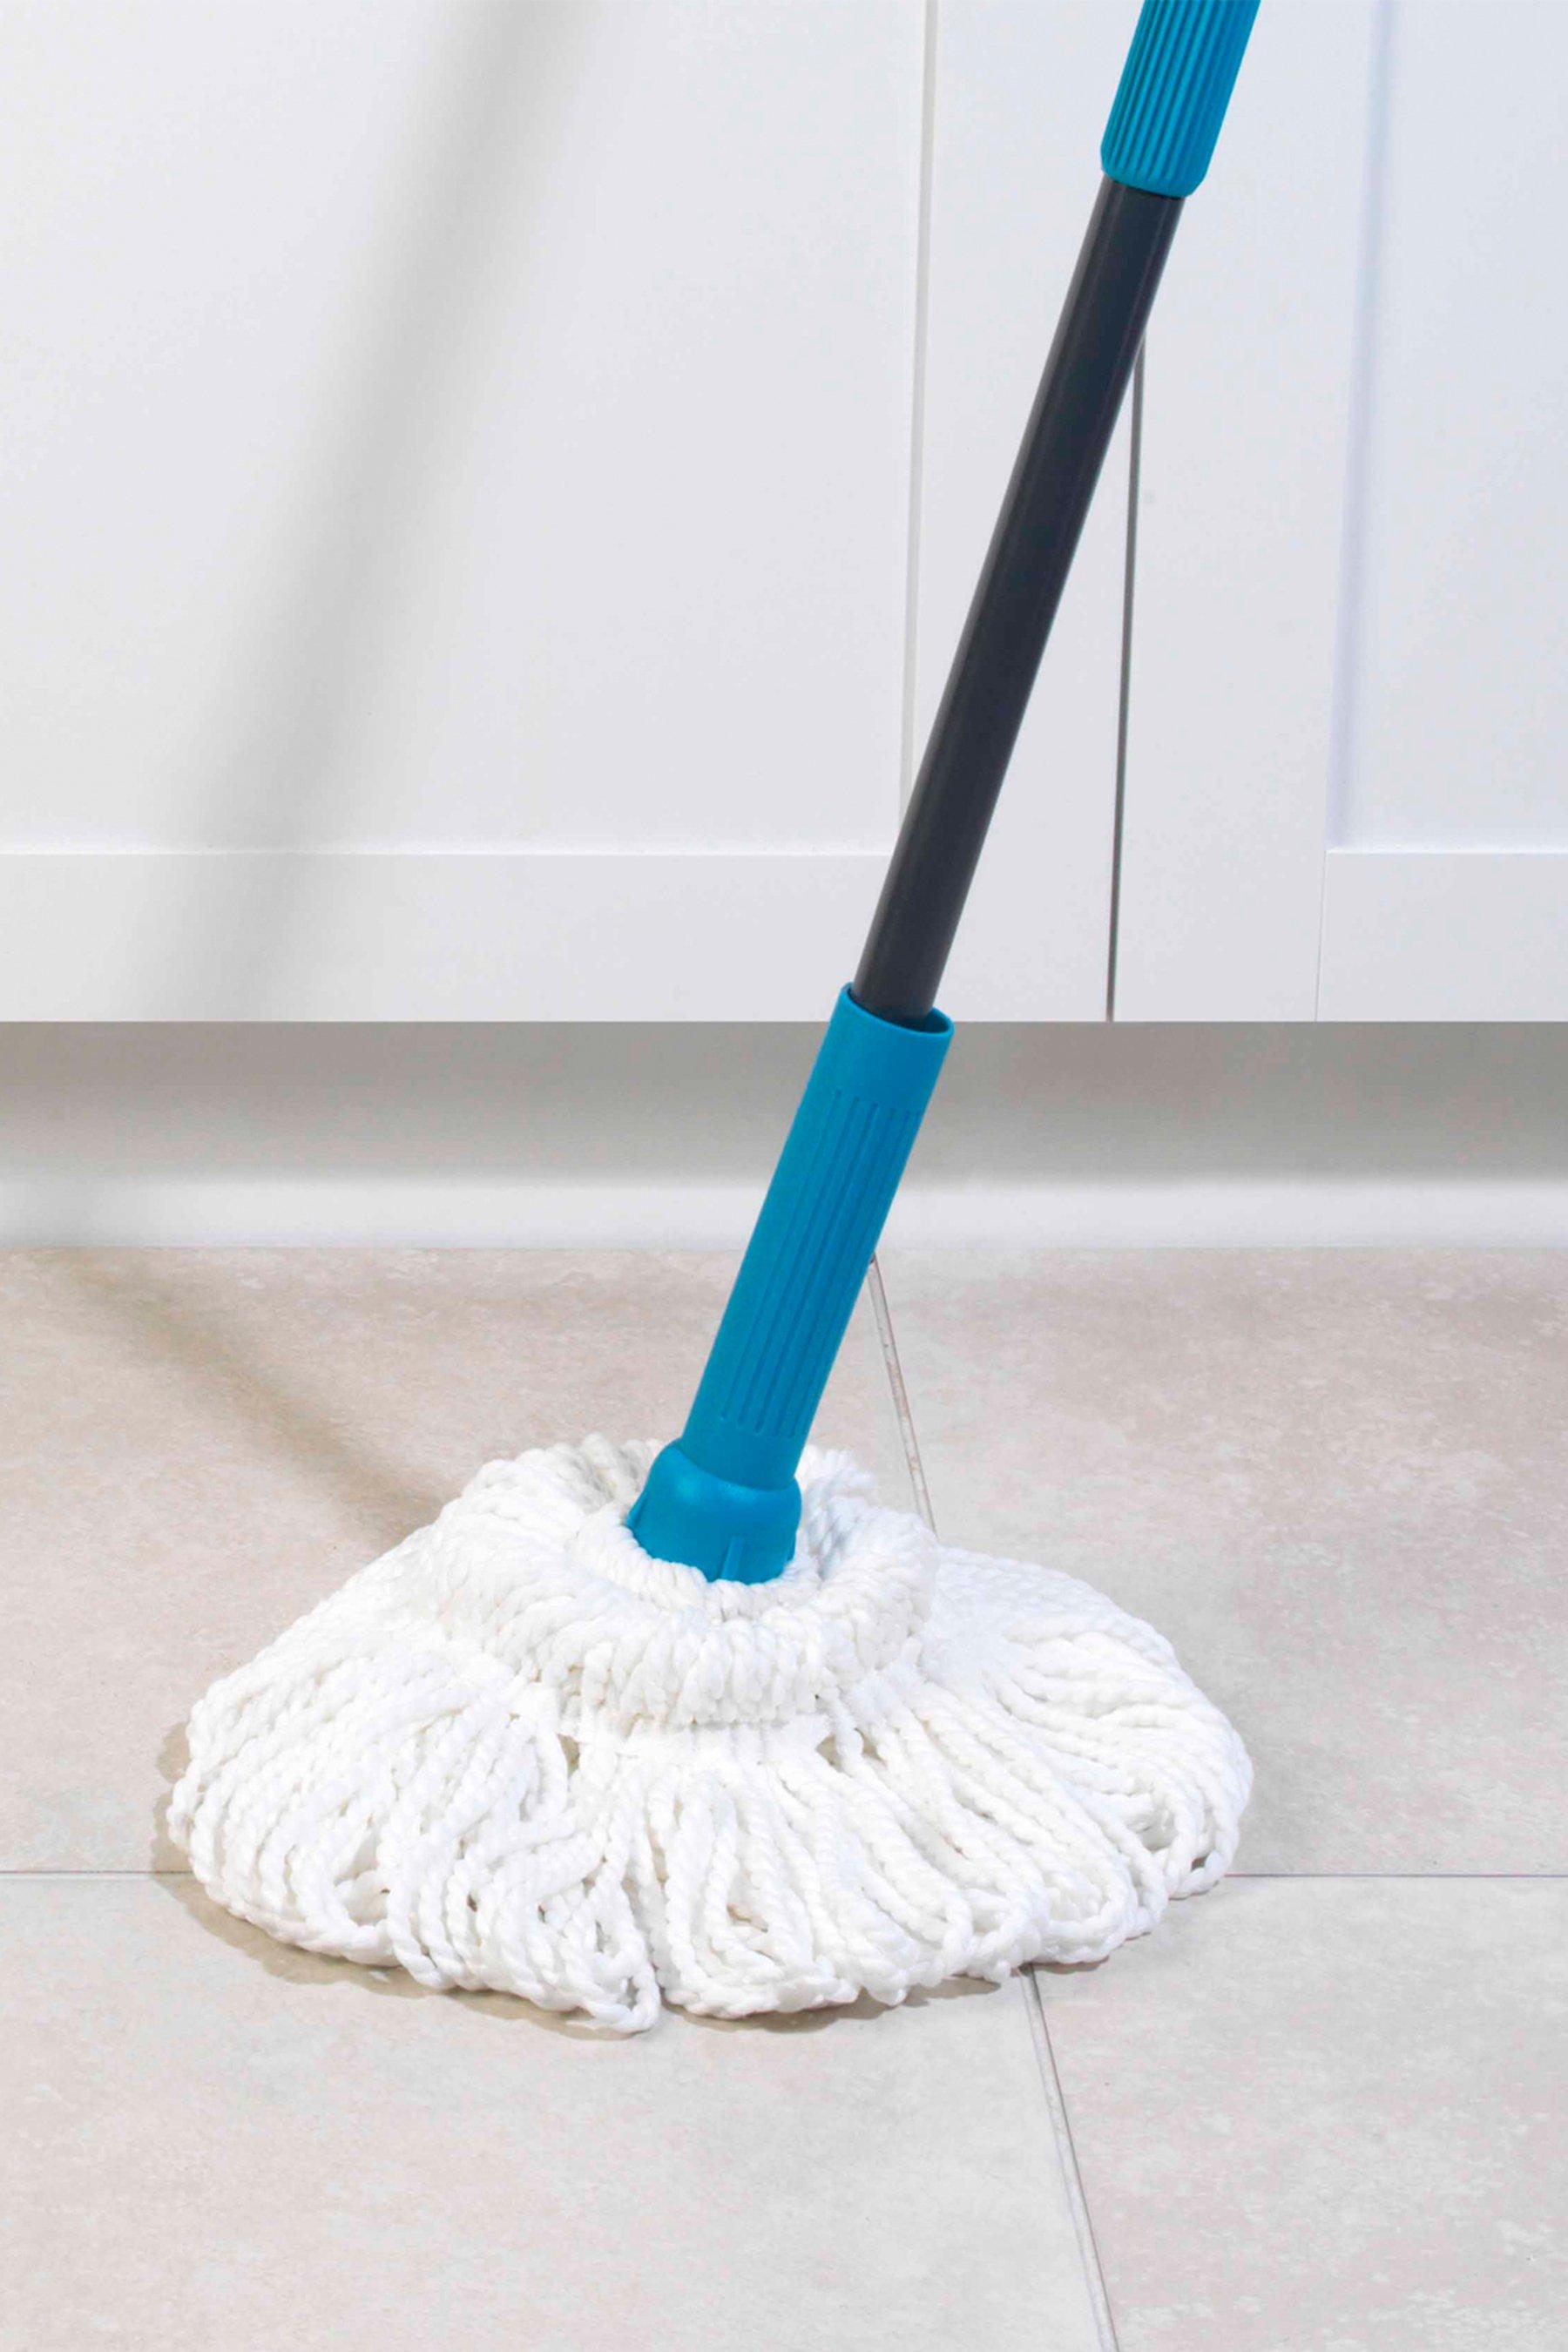 Shop Beldray Telescopic Mops & Extending Floor Cleaning Mops